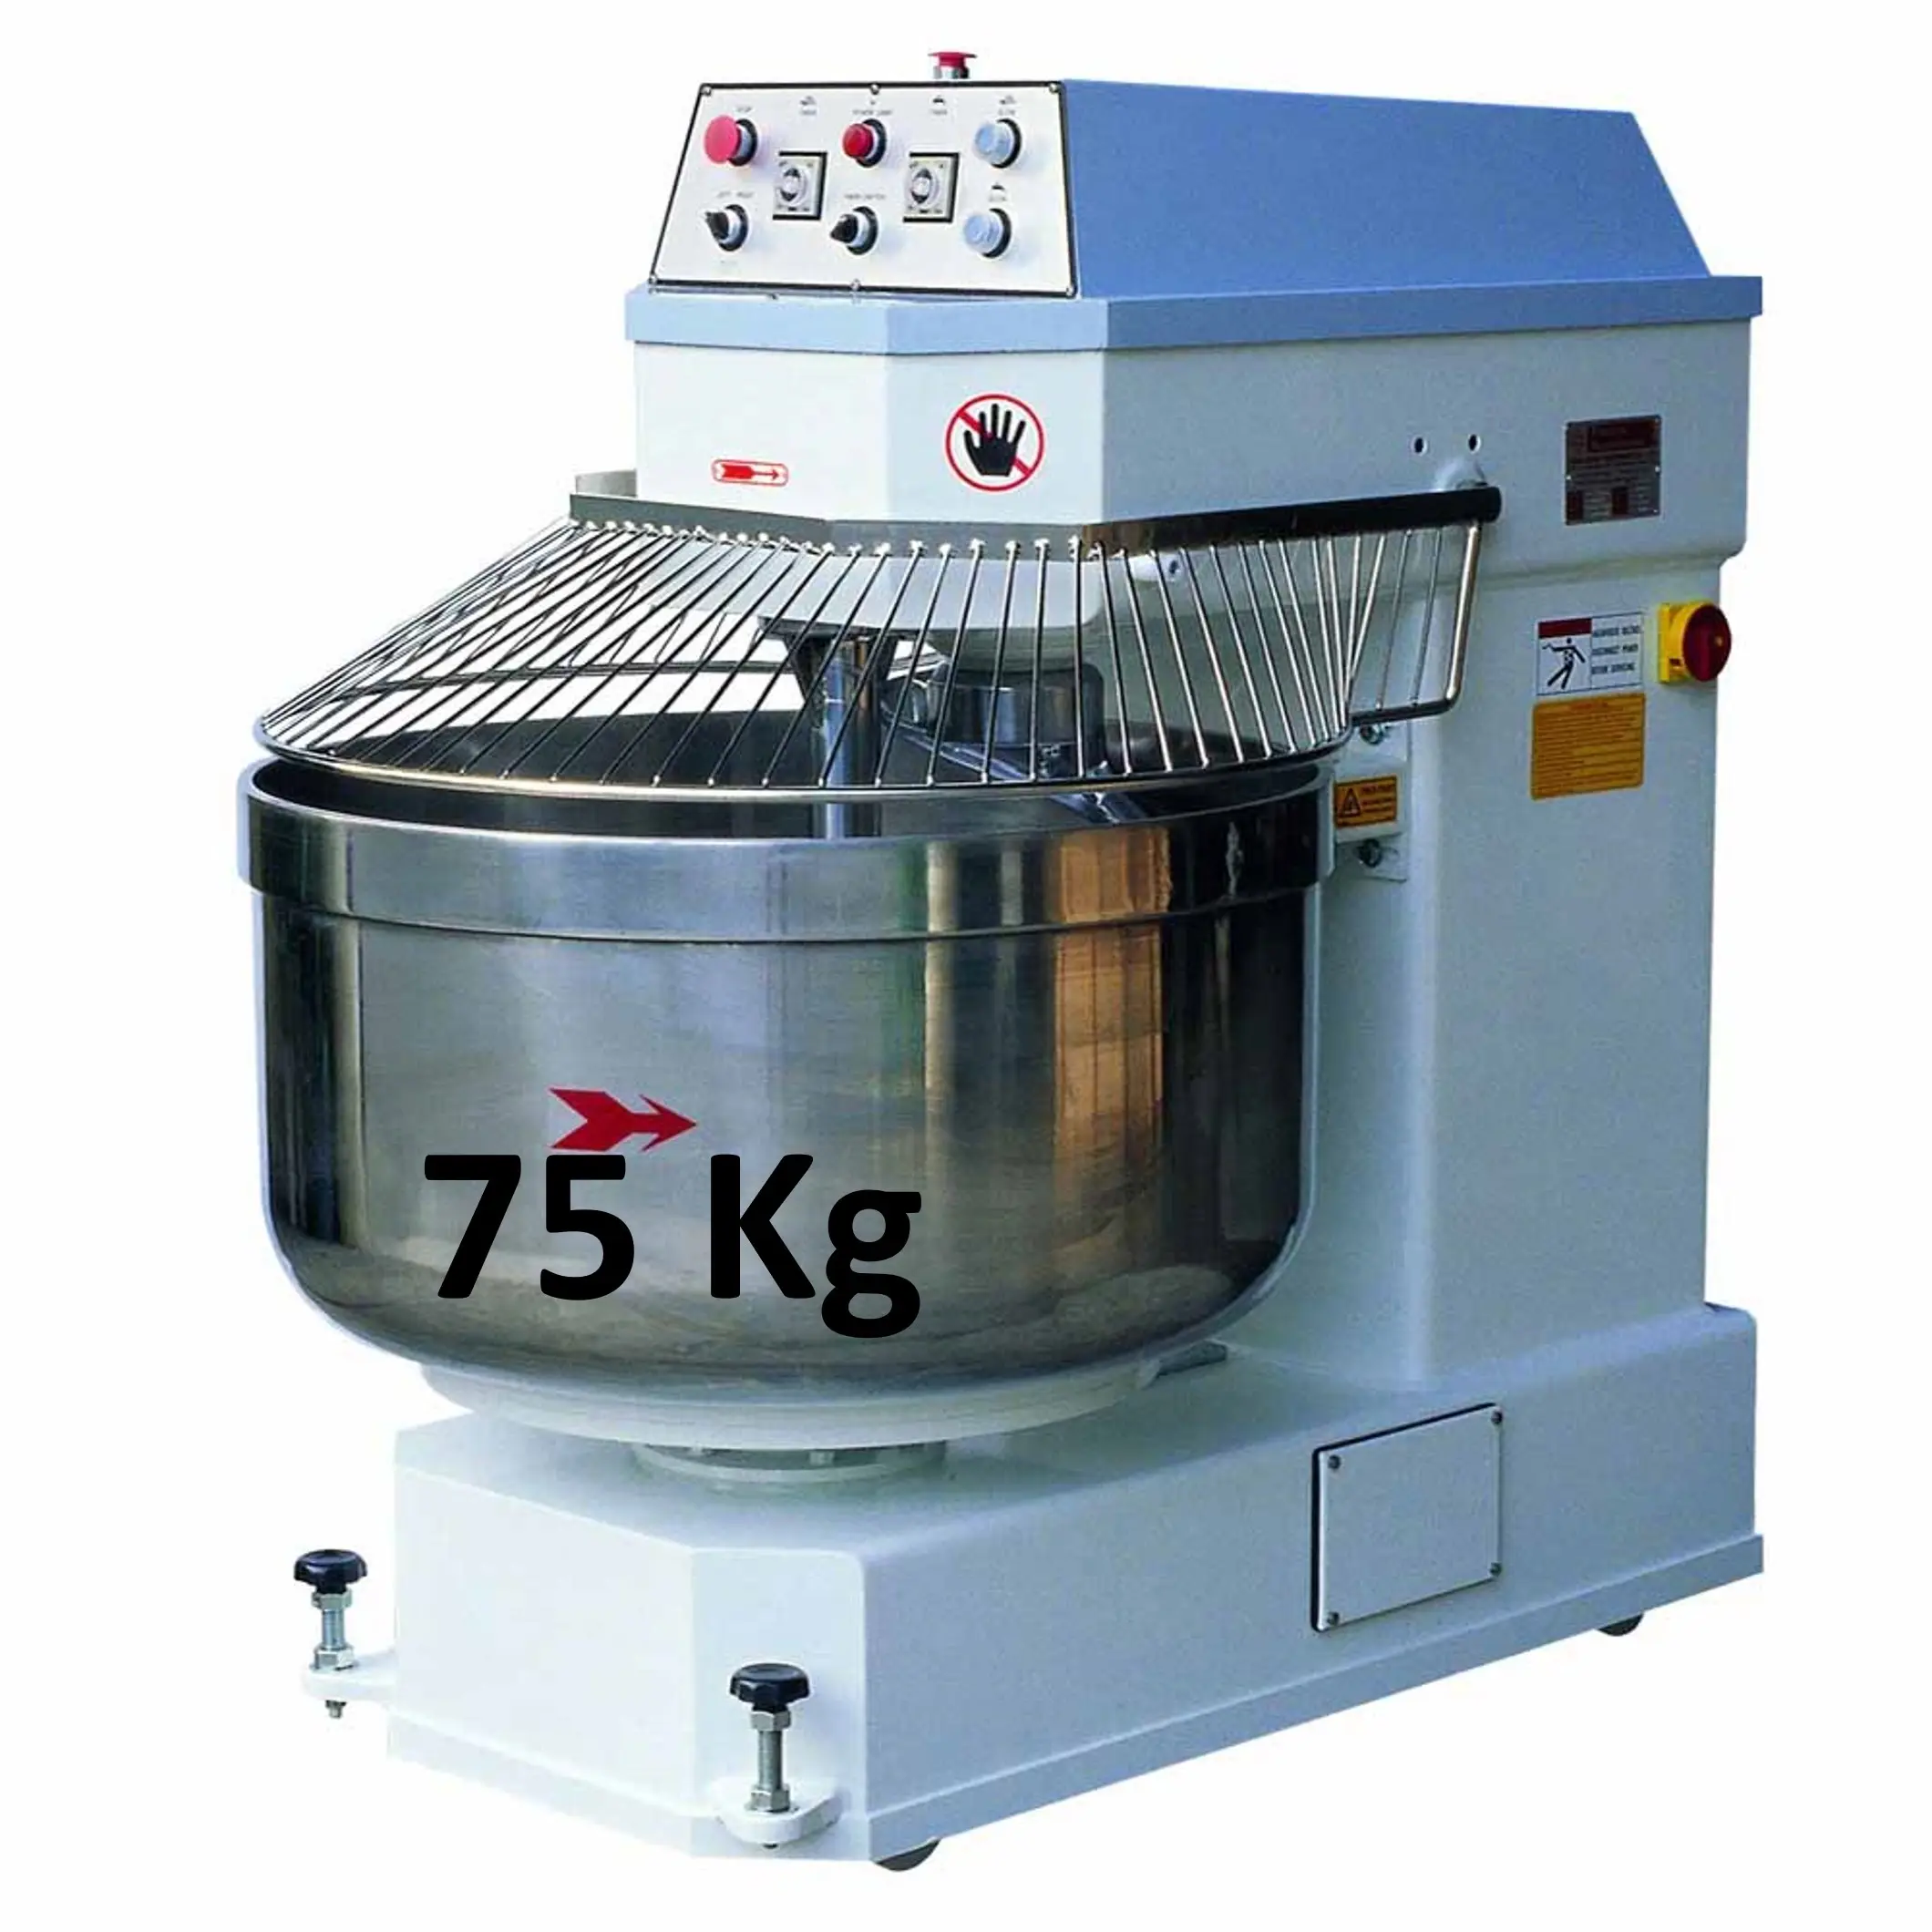 Misturador de massa espiral, feita no fabricante de pizza, equipamento de cozimento, misturador de massa